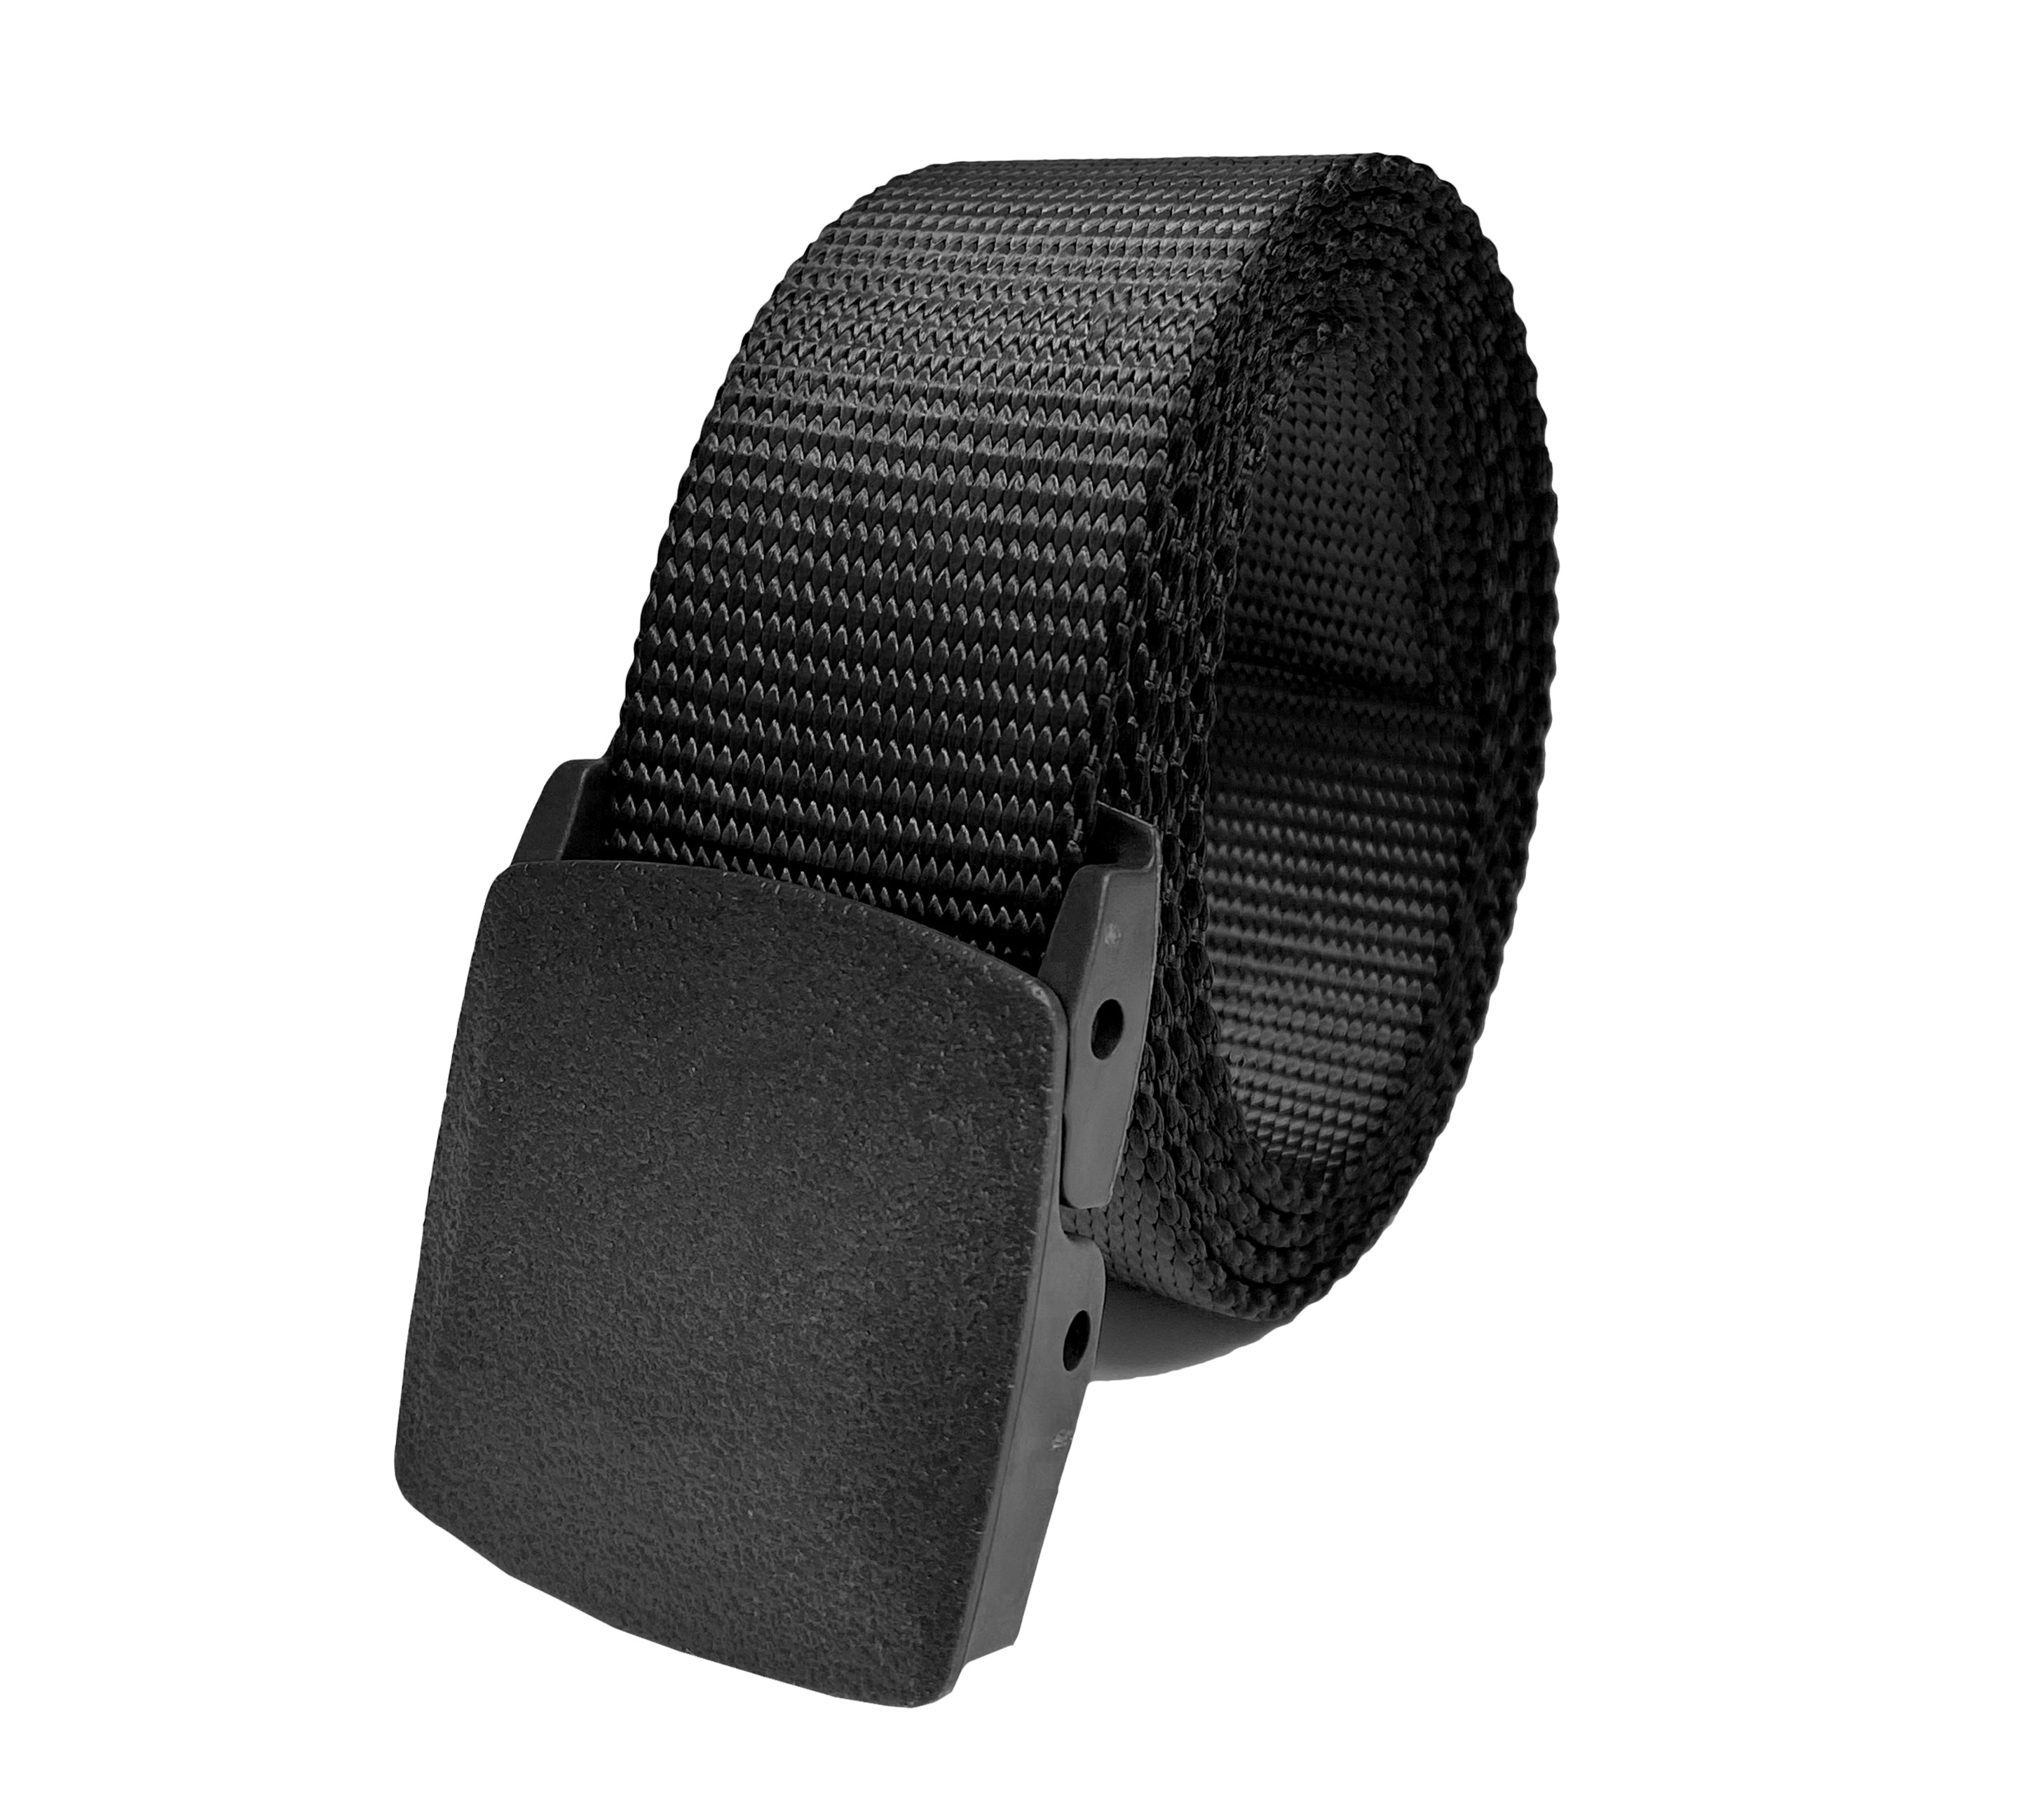 1.5 inch Heavy-duty Buckle Belt – BL TAC